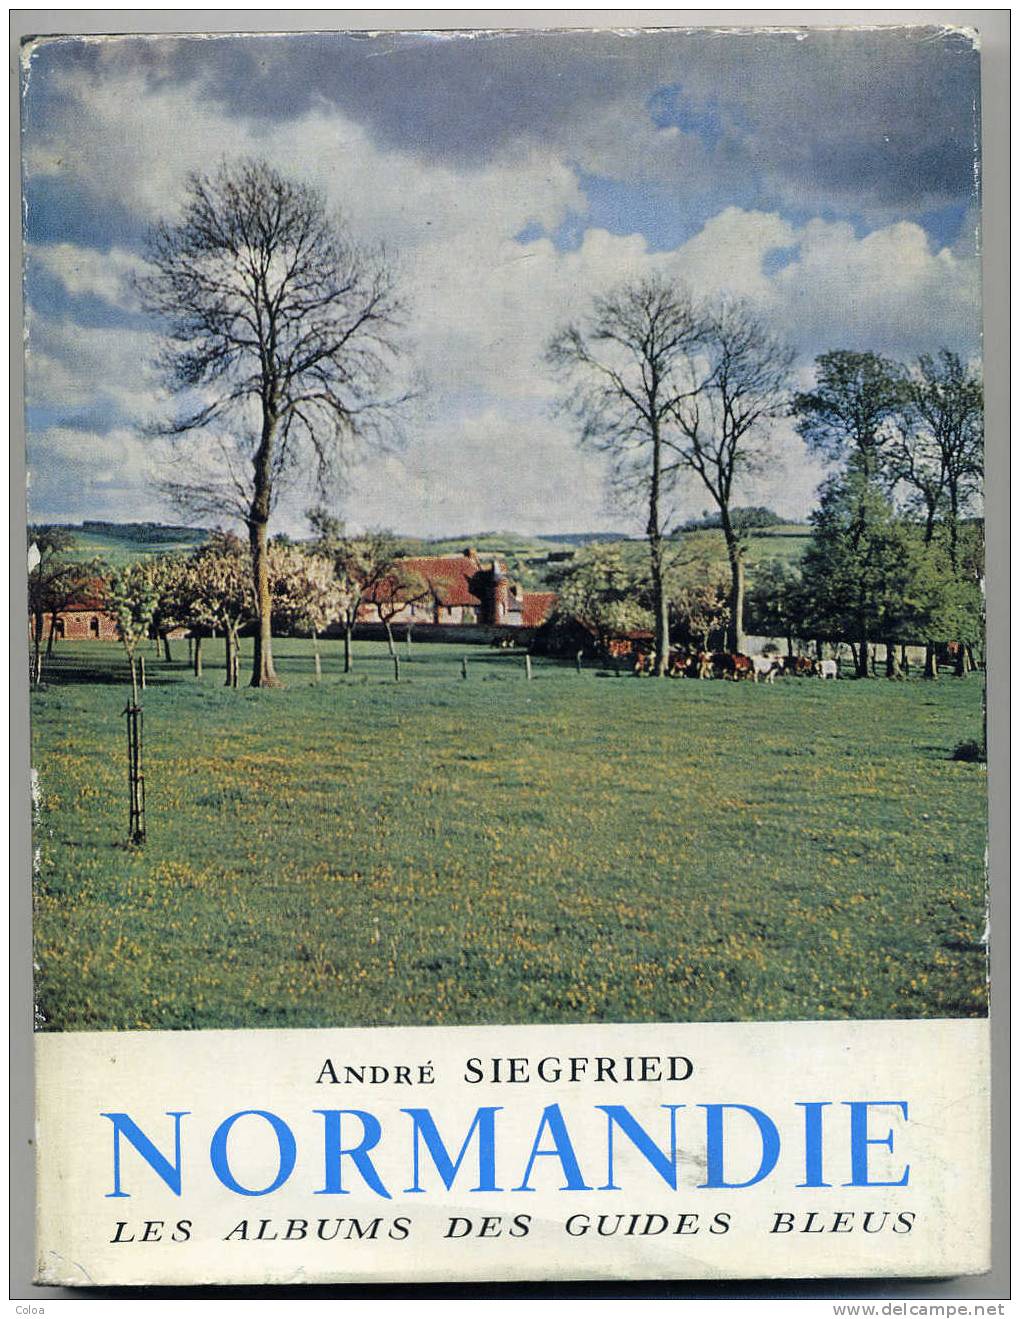 André SIEGFRIED NORMANDIE 1957 - Normandië